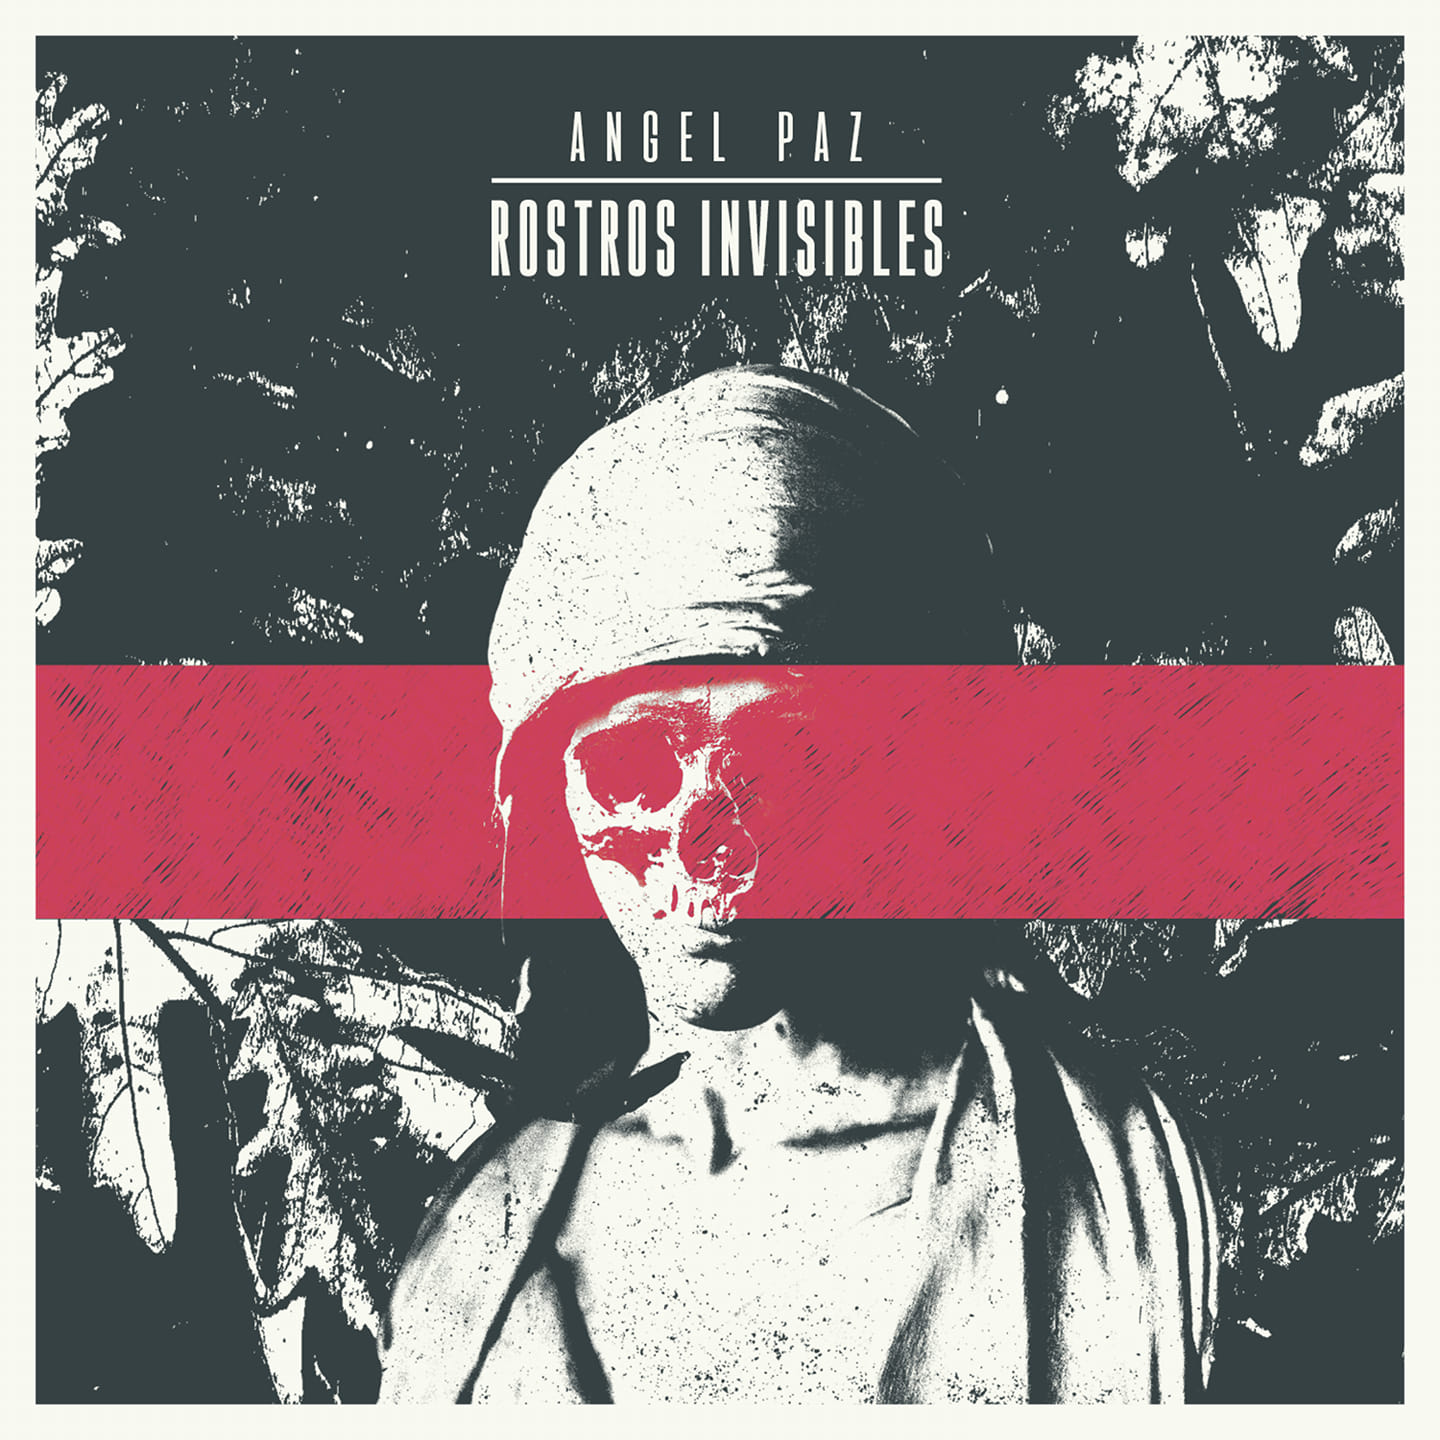 Reseña de “Rostros Invisibles” el nuevo disco de Angel Paz